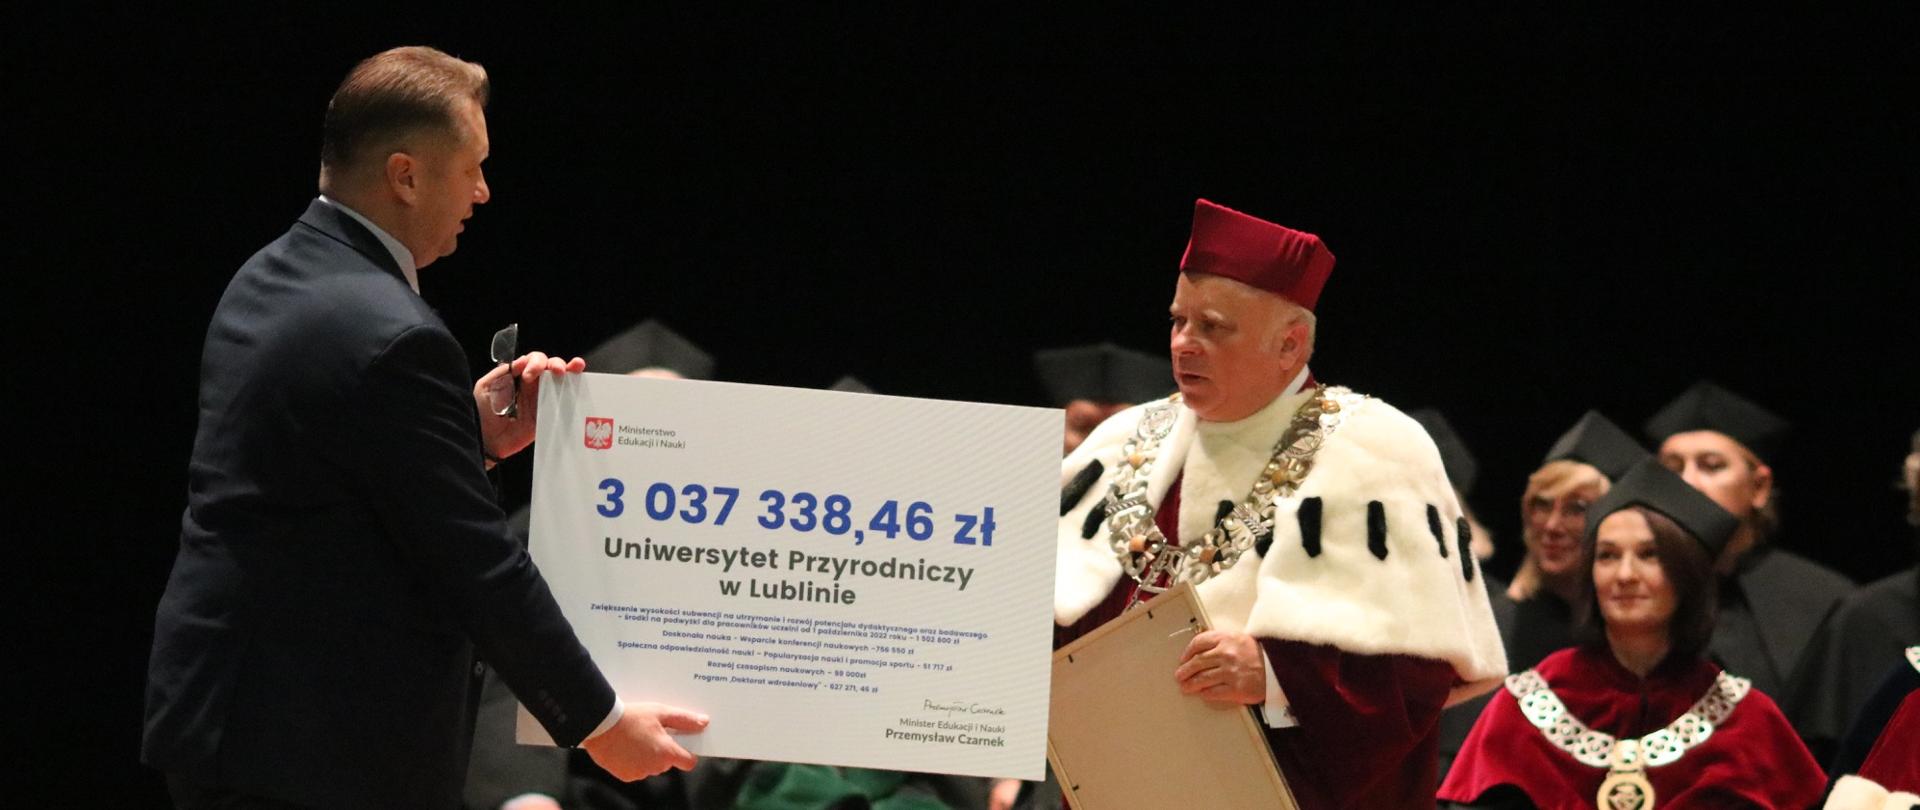 Minister wręcza mężczyźnie w gronostajowym płaszczu wielki symboliczny czek z napisem 3 037 338,46 zł.